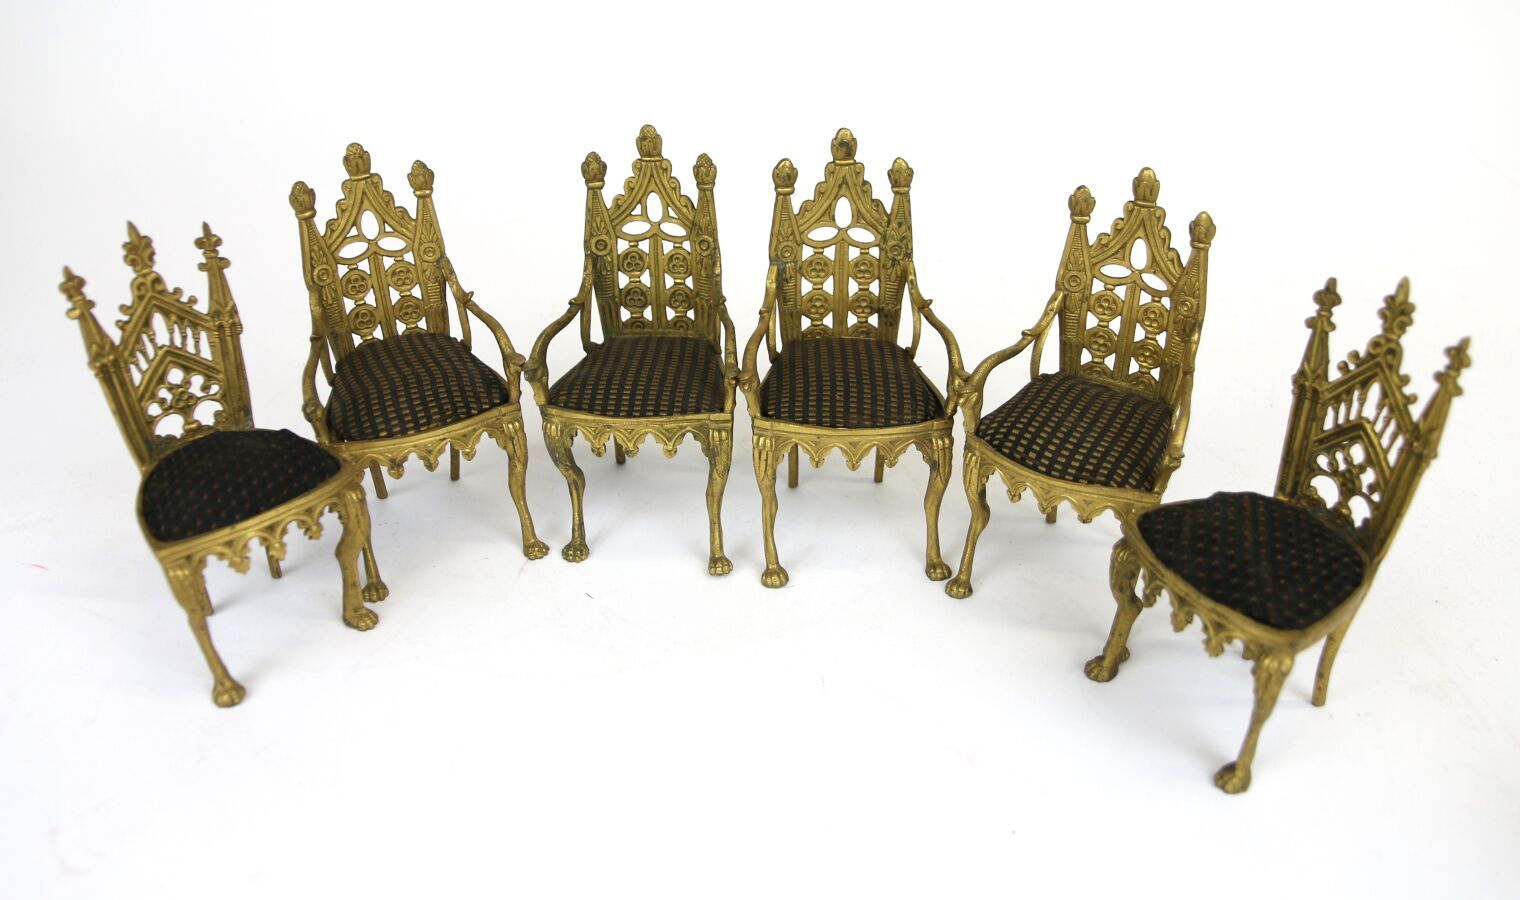 Null 新哥特式镀金青铜四把扶手椅和两把迷你椅套件。
19 世纪。
(轻微磨损）